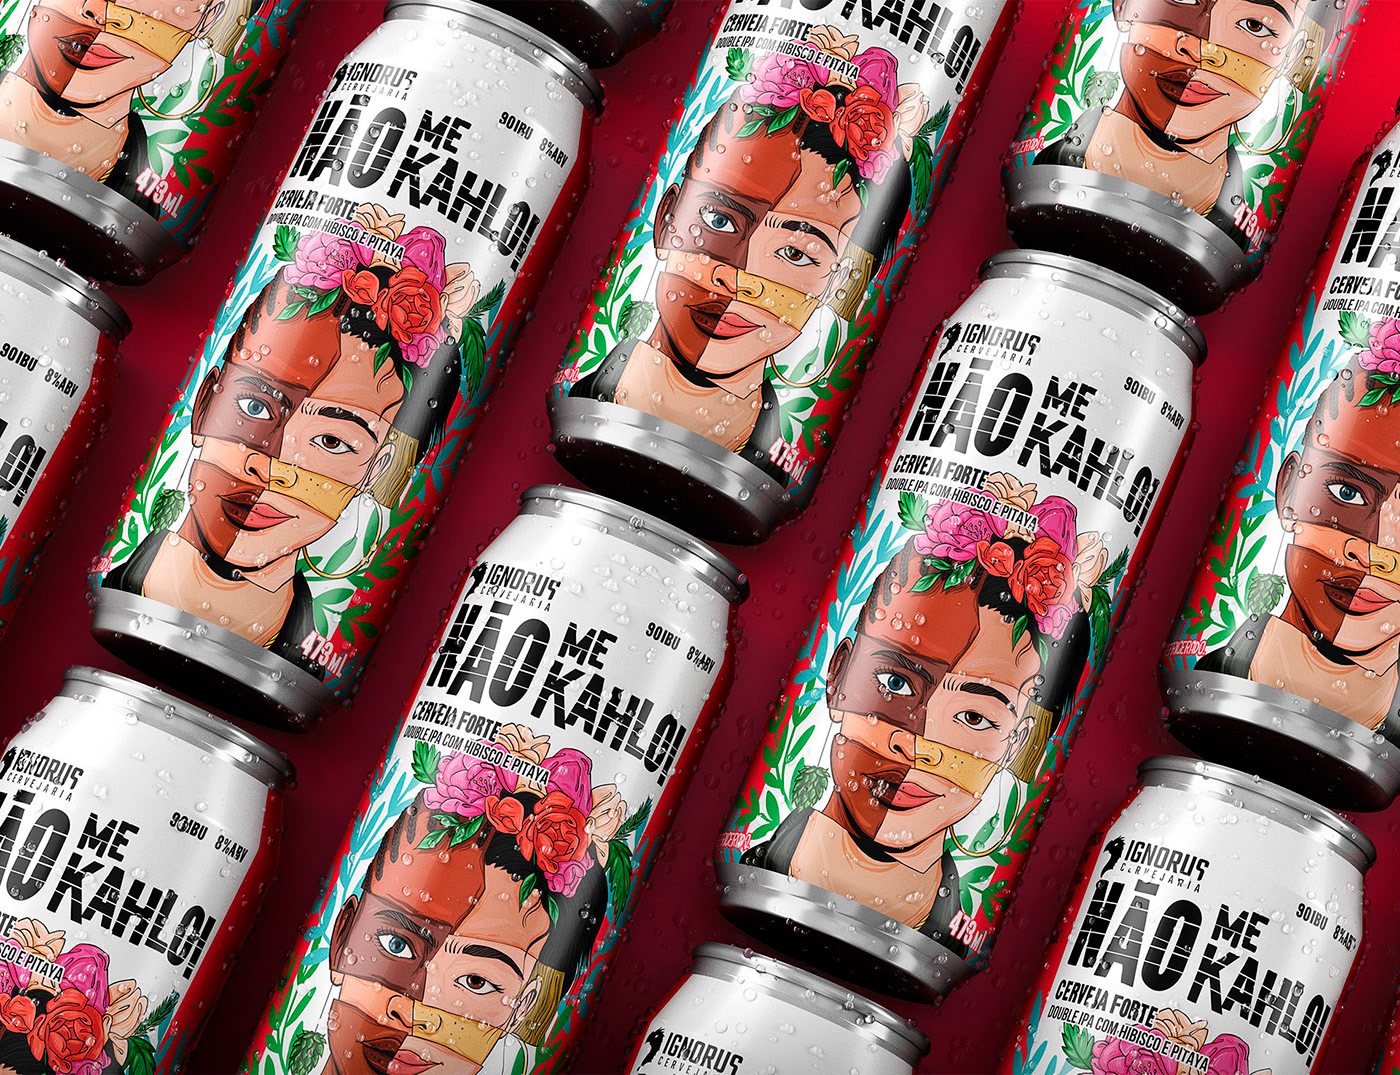 beer colors floral florals Flowers Frida Kahlo illustration portrait Label Packaging woman